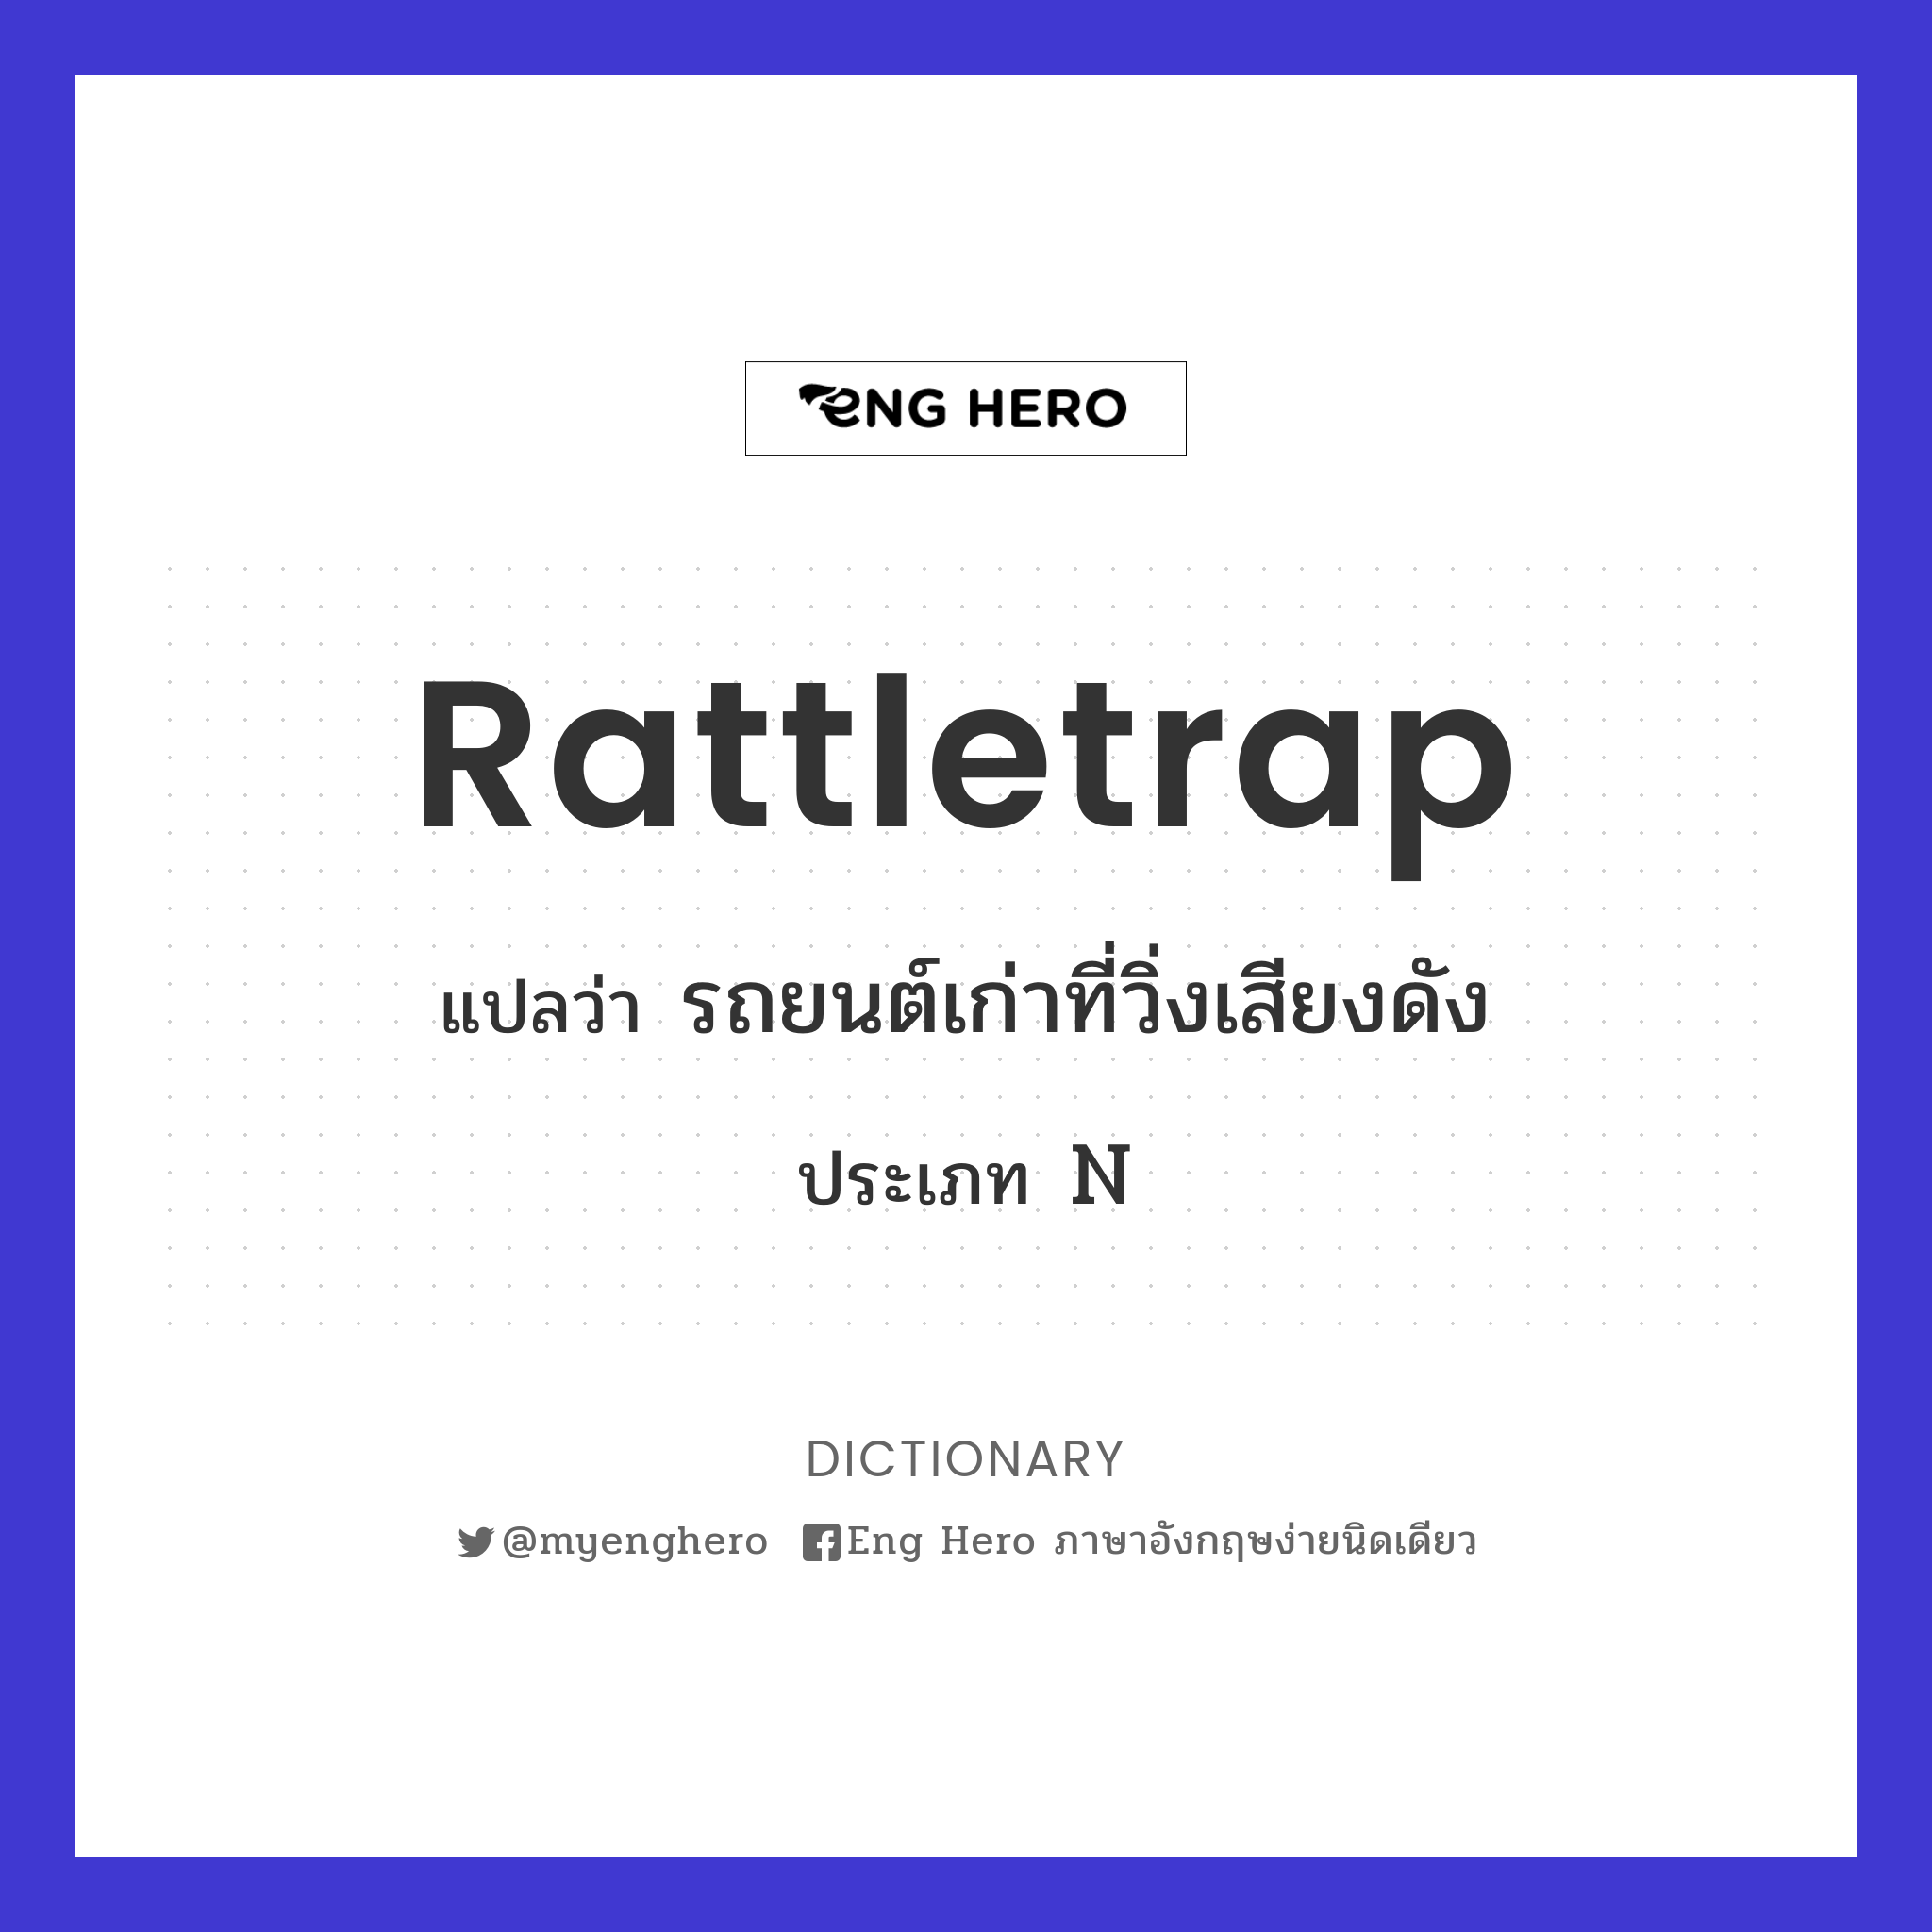 rattletrap